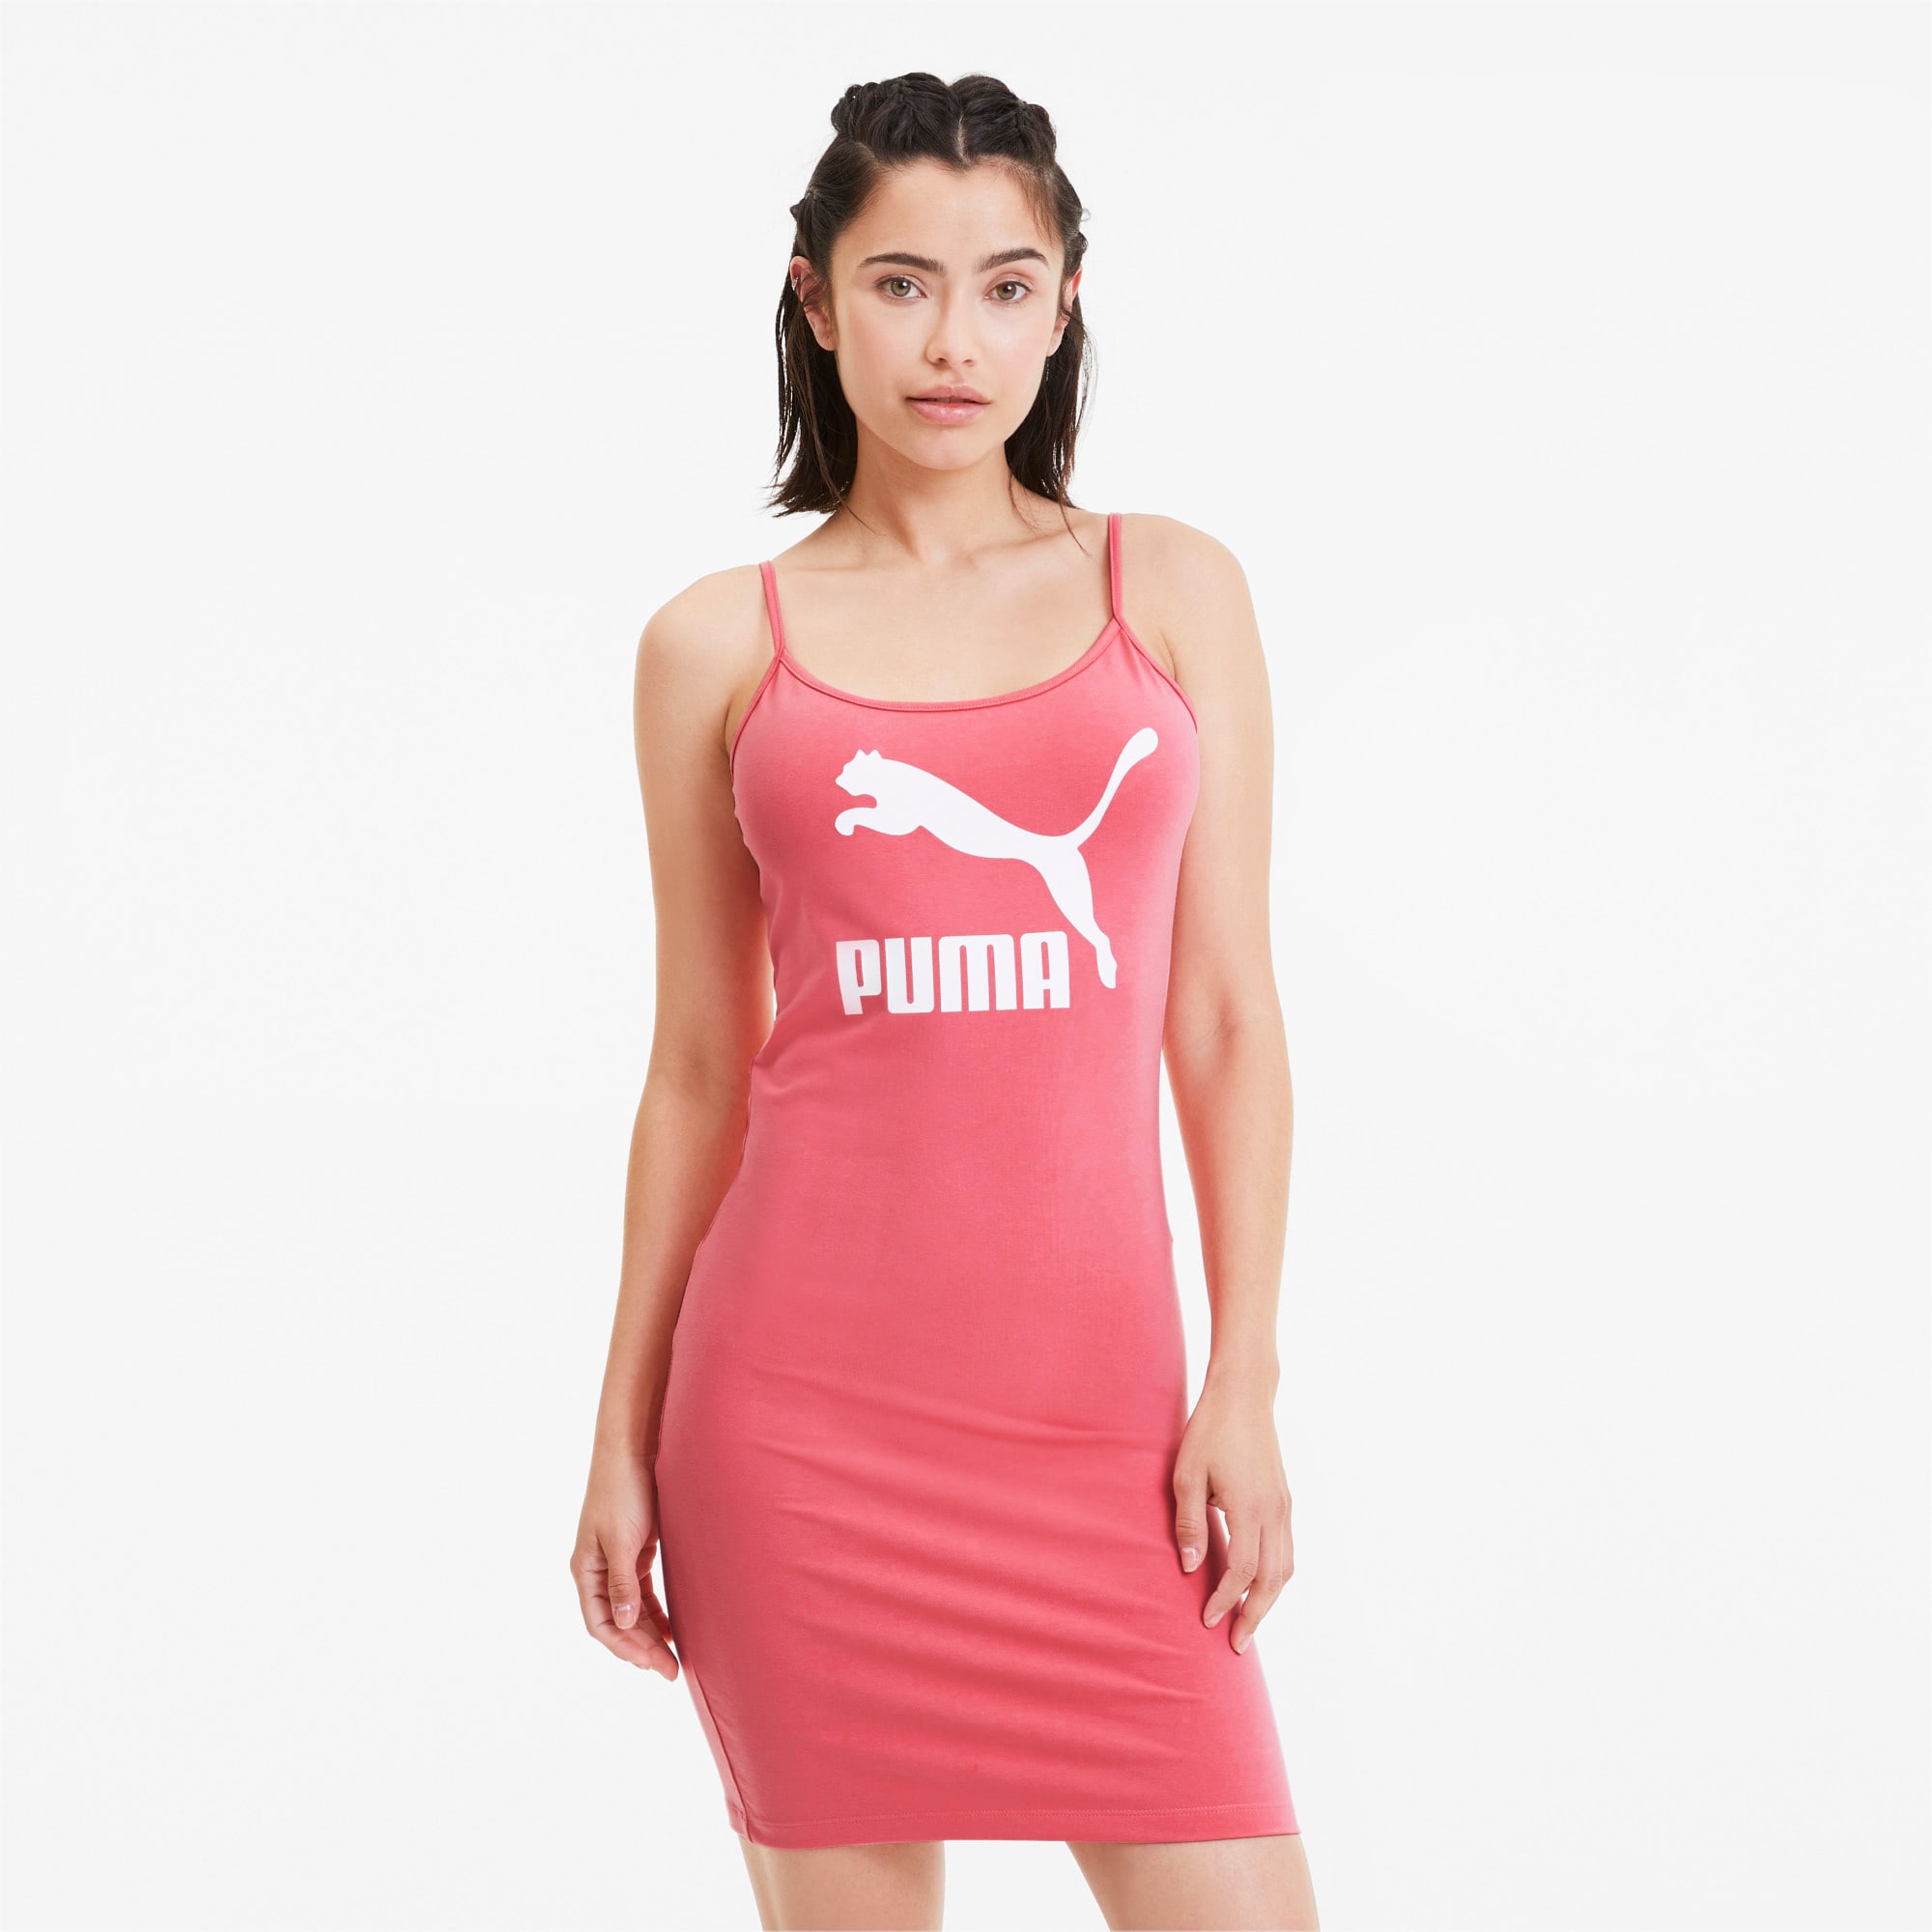 pink puma dress